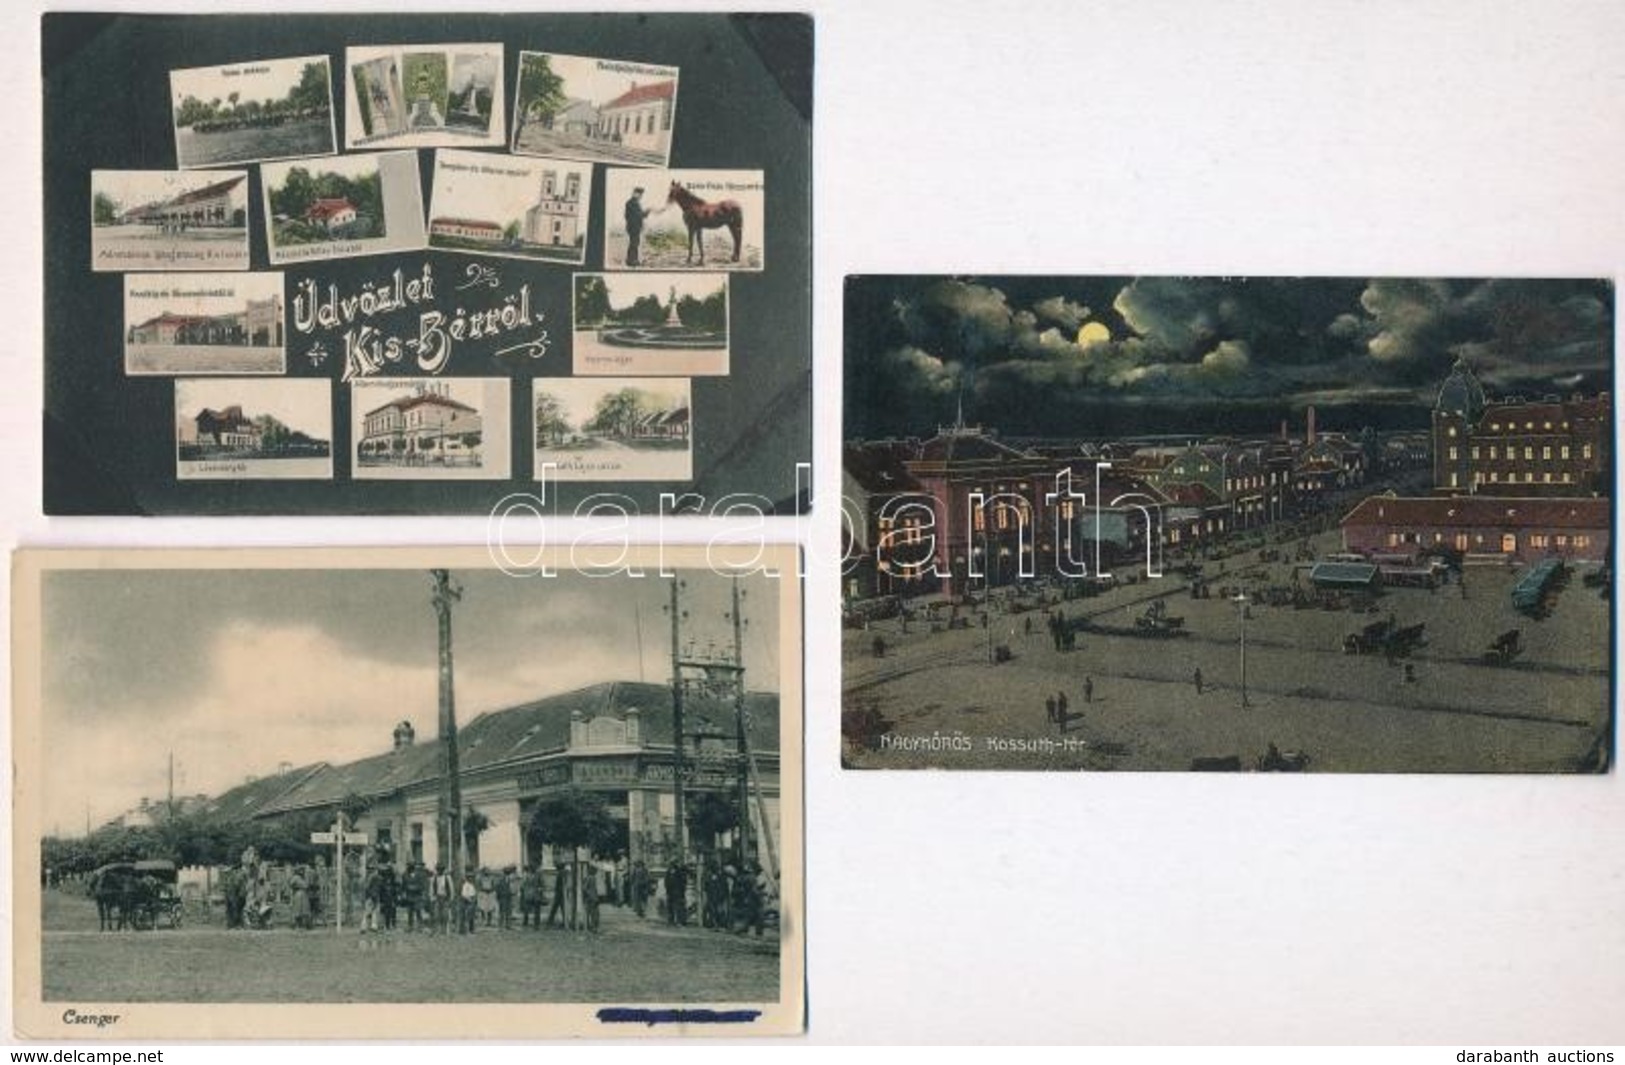 ** * 14 Db RÉGI Magyar Városképes Lap, Vegyes Minőség / 14 Pre-1945 Hungarian Town-view Postcards, Mixed Quality - Non Classés